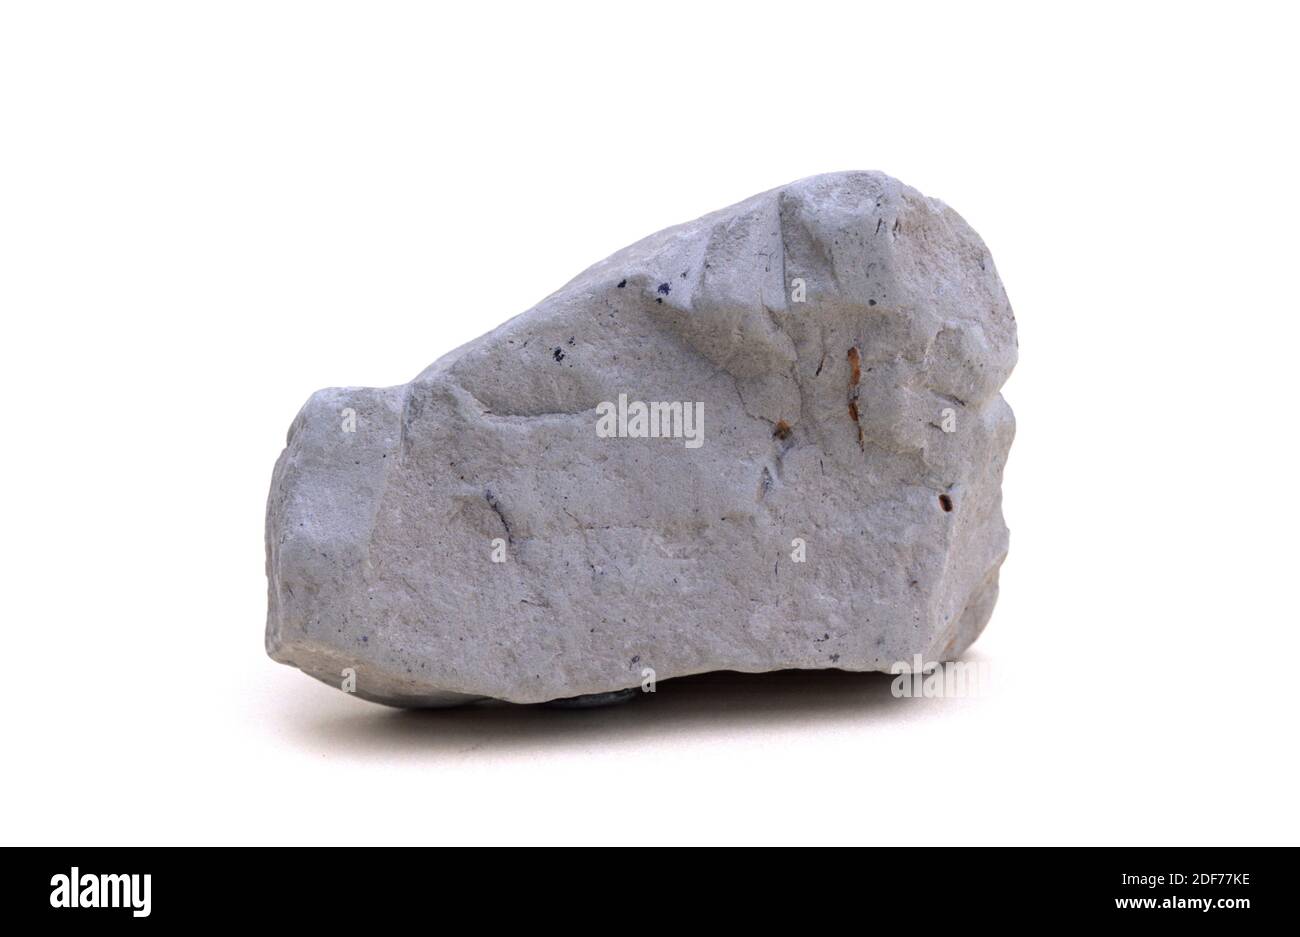 La piedra de barro es una roca sedimentaria de grano fino compuesta por minerales de arcilla. Muestra. Foto de stock